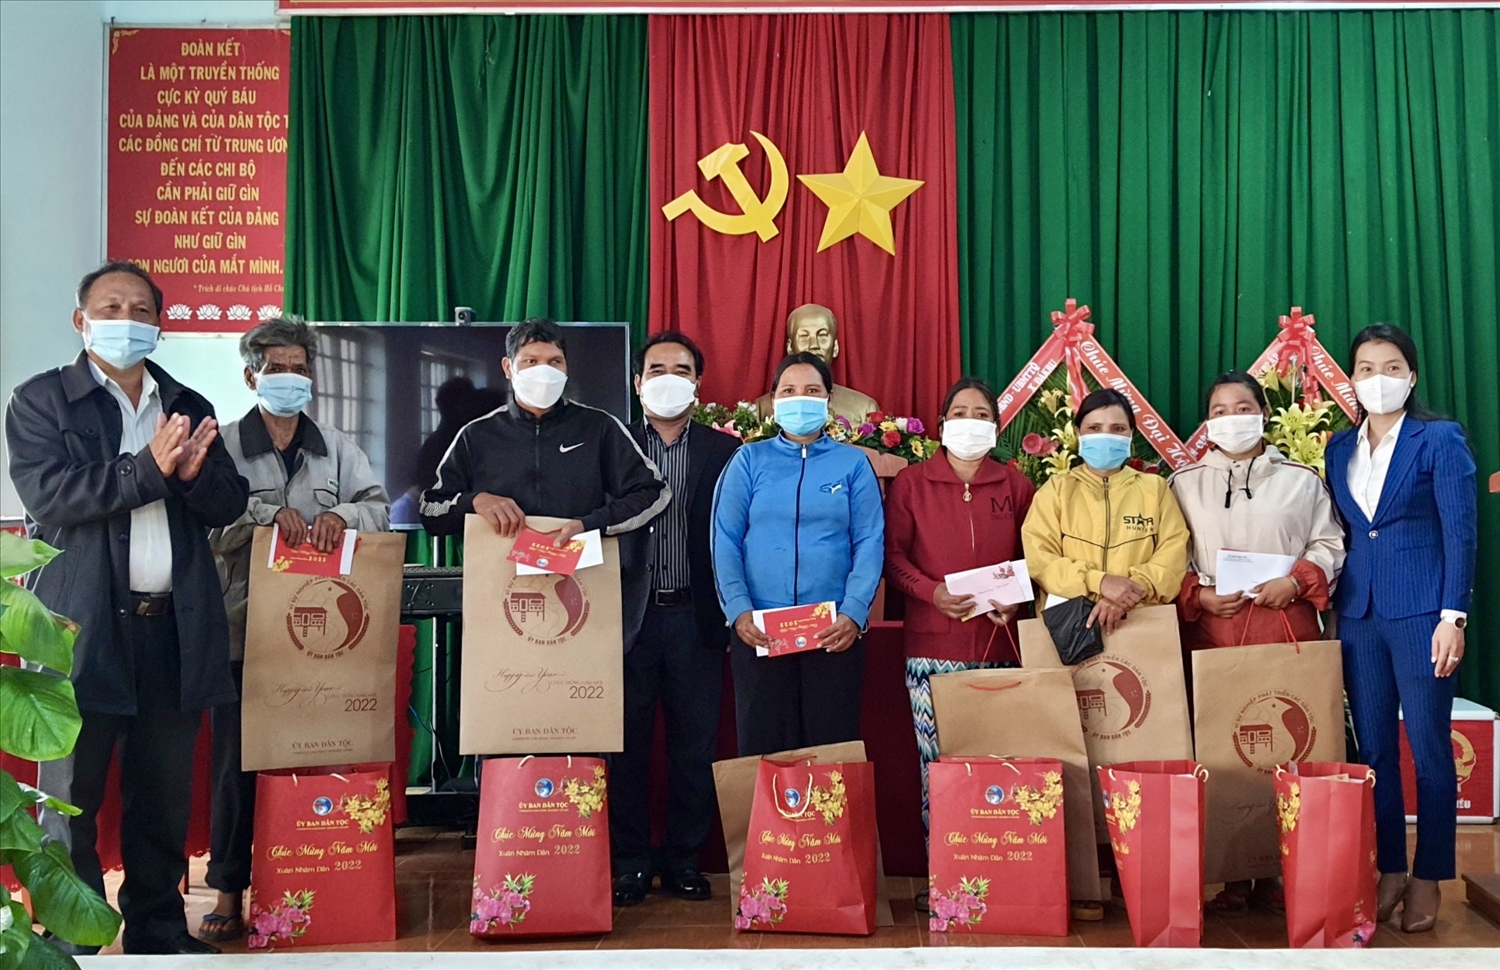 Đoàn công tác trao quà cho đồng bào DTTS xã Quảng Tín, huyện Đắk R’lấp